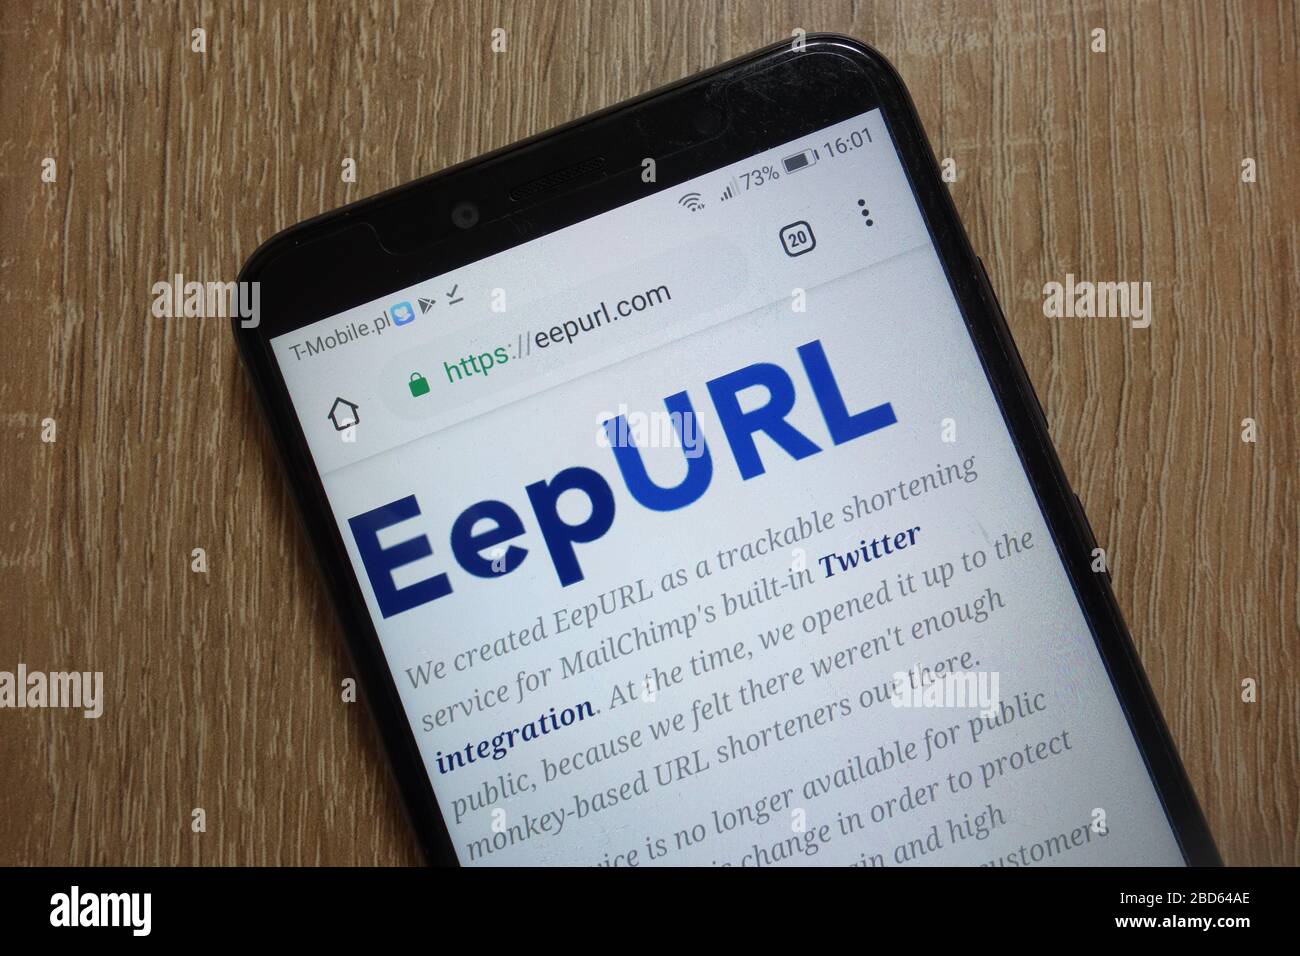 EepURL website (eepurl.com) displayed on smartphone Stock Photo